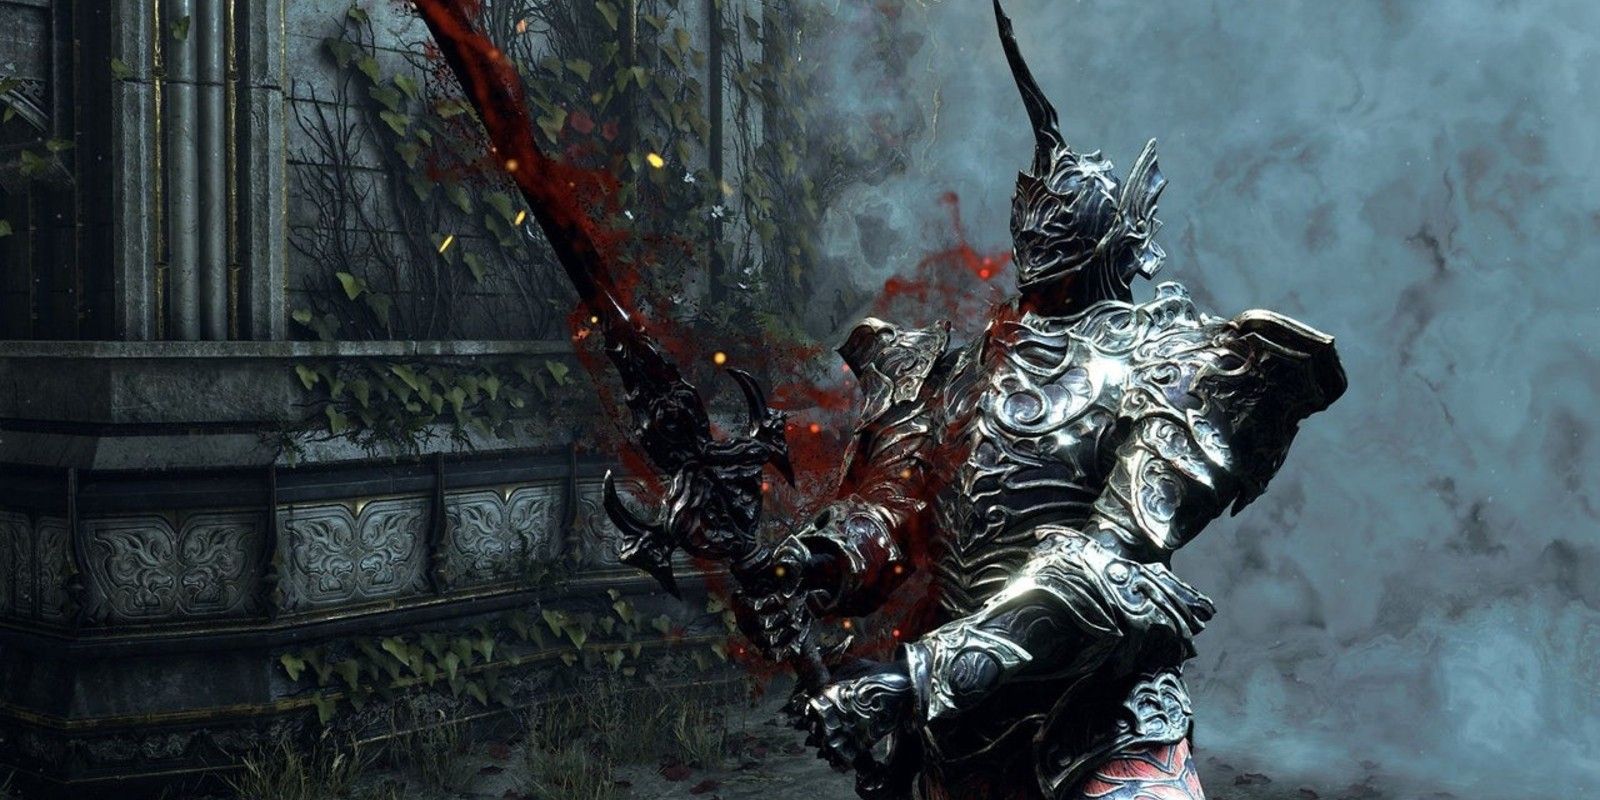 A player wields a sword in Demon's Souls